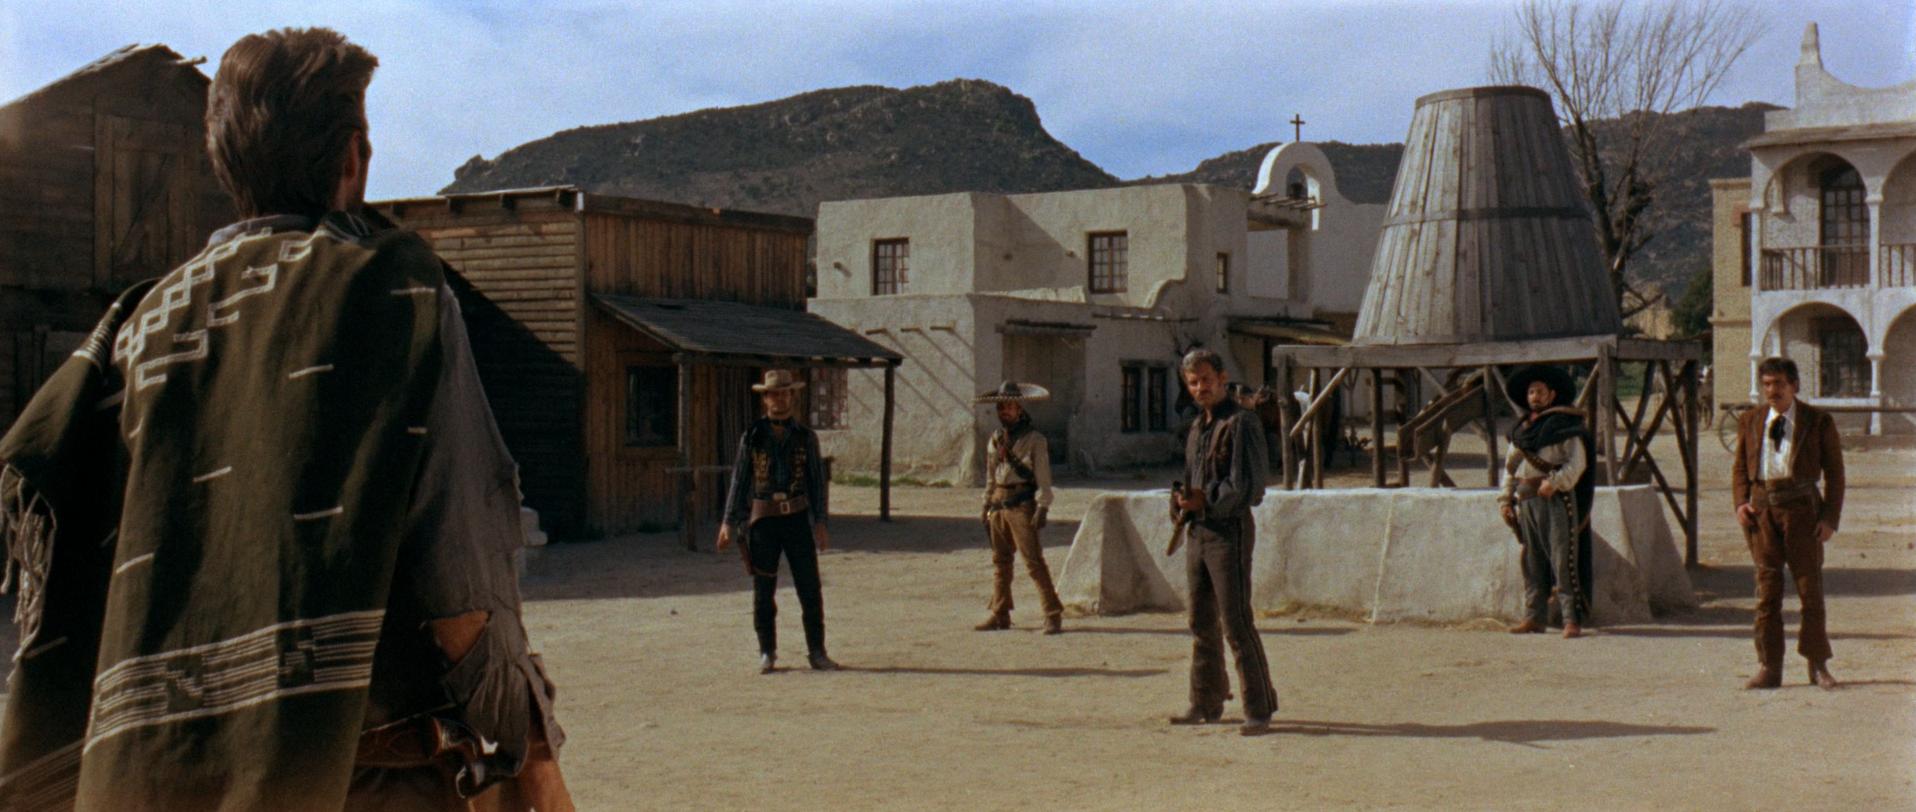 Una sequenza di "Per un Pugno di Dollari" di Sergio Leone (1964)